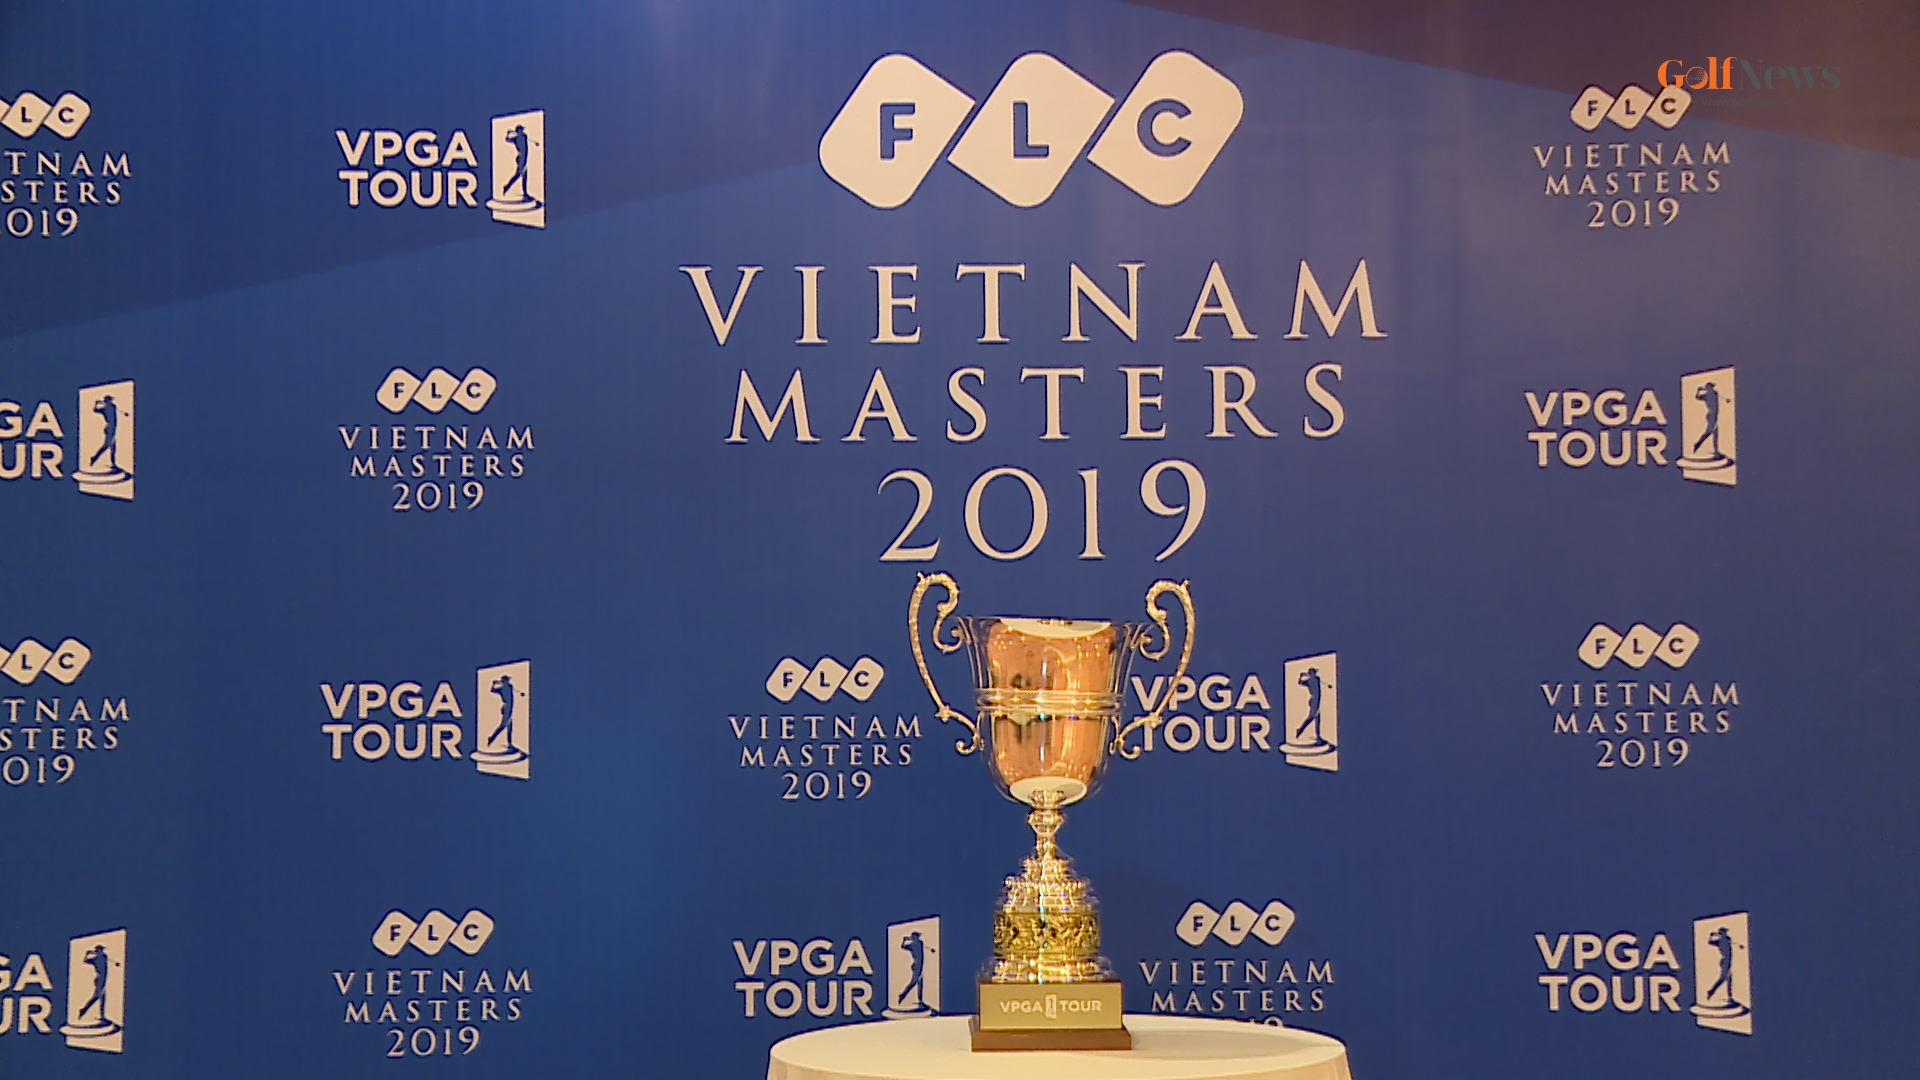 FLC Việt Nam Masters 2019: Không giới hạn golfer chuyên nghiệp nước ngoài đăng kí